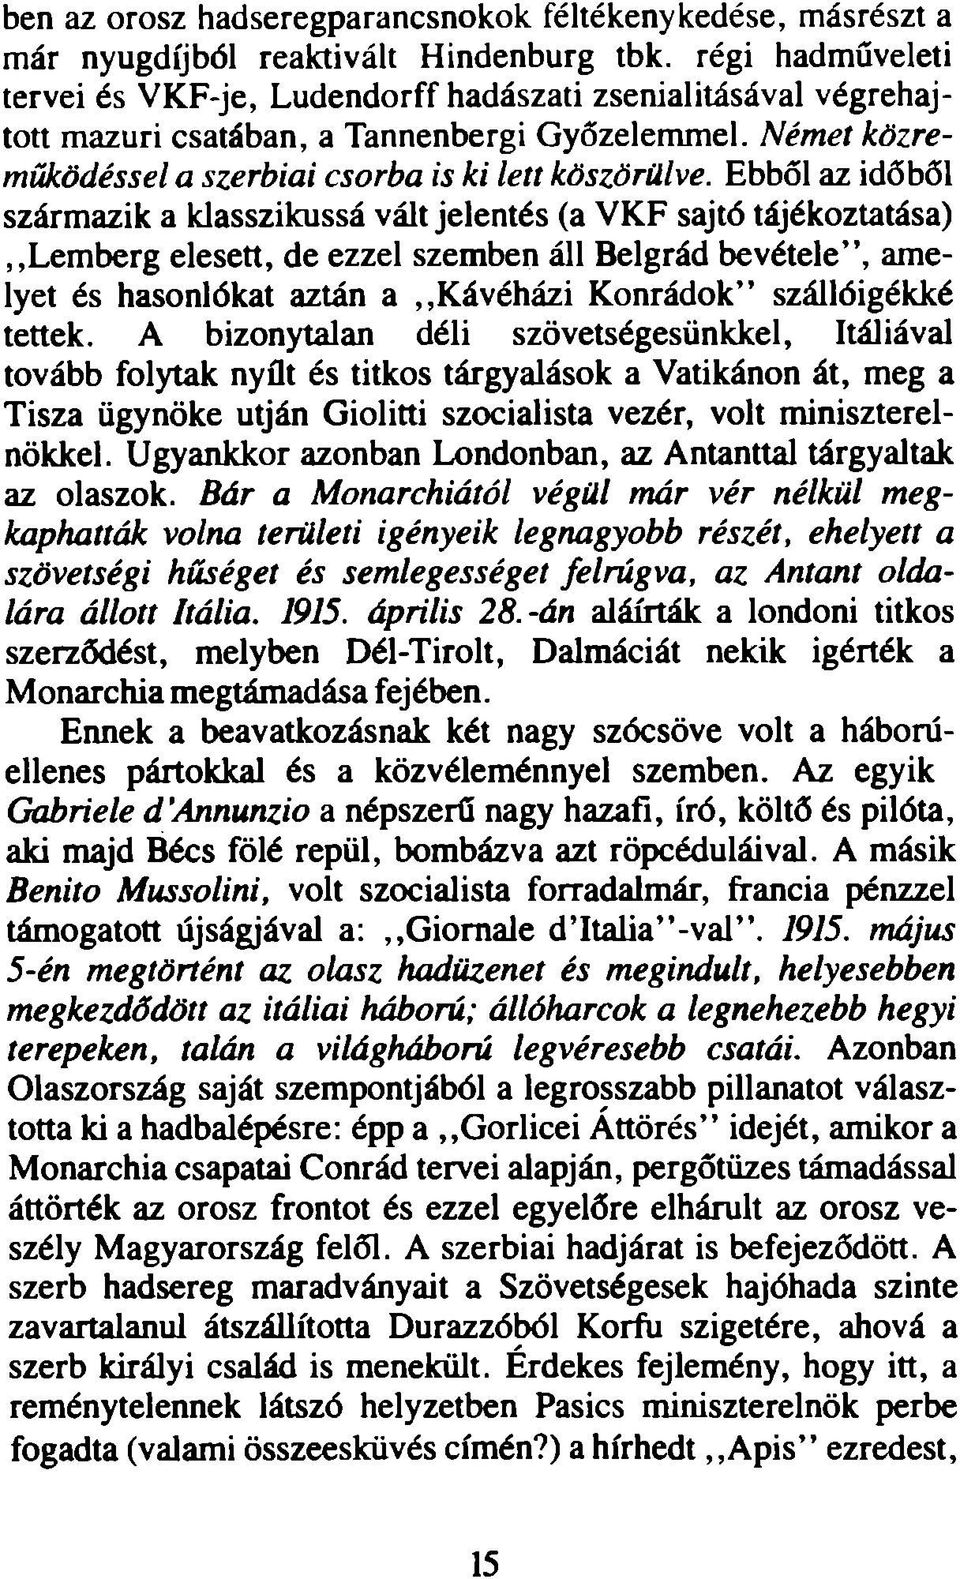 Ebből az időből származik a klasszikussá vált jelentés (a VKF sajtó tájékoztatása),,lem berg elesett, de ezzel szemben áll Belgrád bevétele, amelyet és hasonlókat aztán a,,kávéházi Konrádok